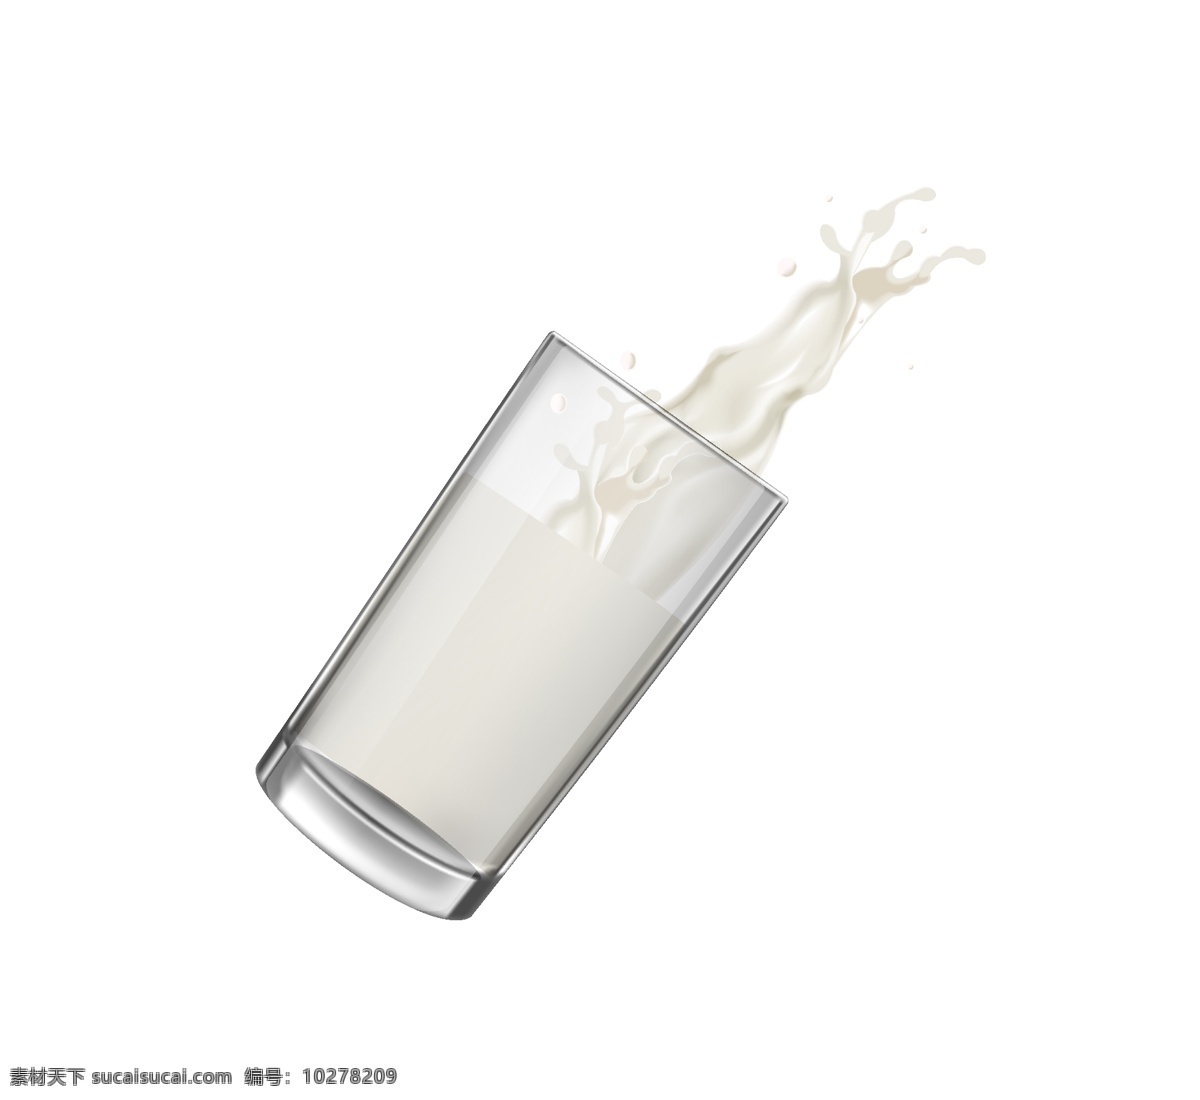 原创 实物 飞溅 牛奶 飞溅牛奶 牛奶杯 飞溅的牛奶 牛奶png 原创飞溅牛奶